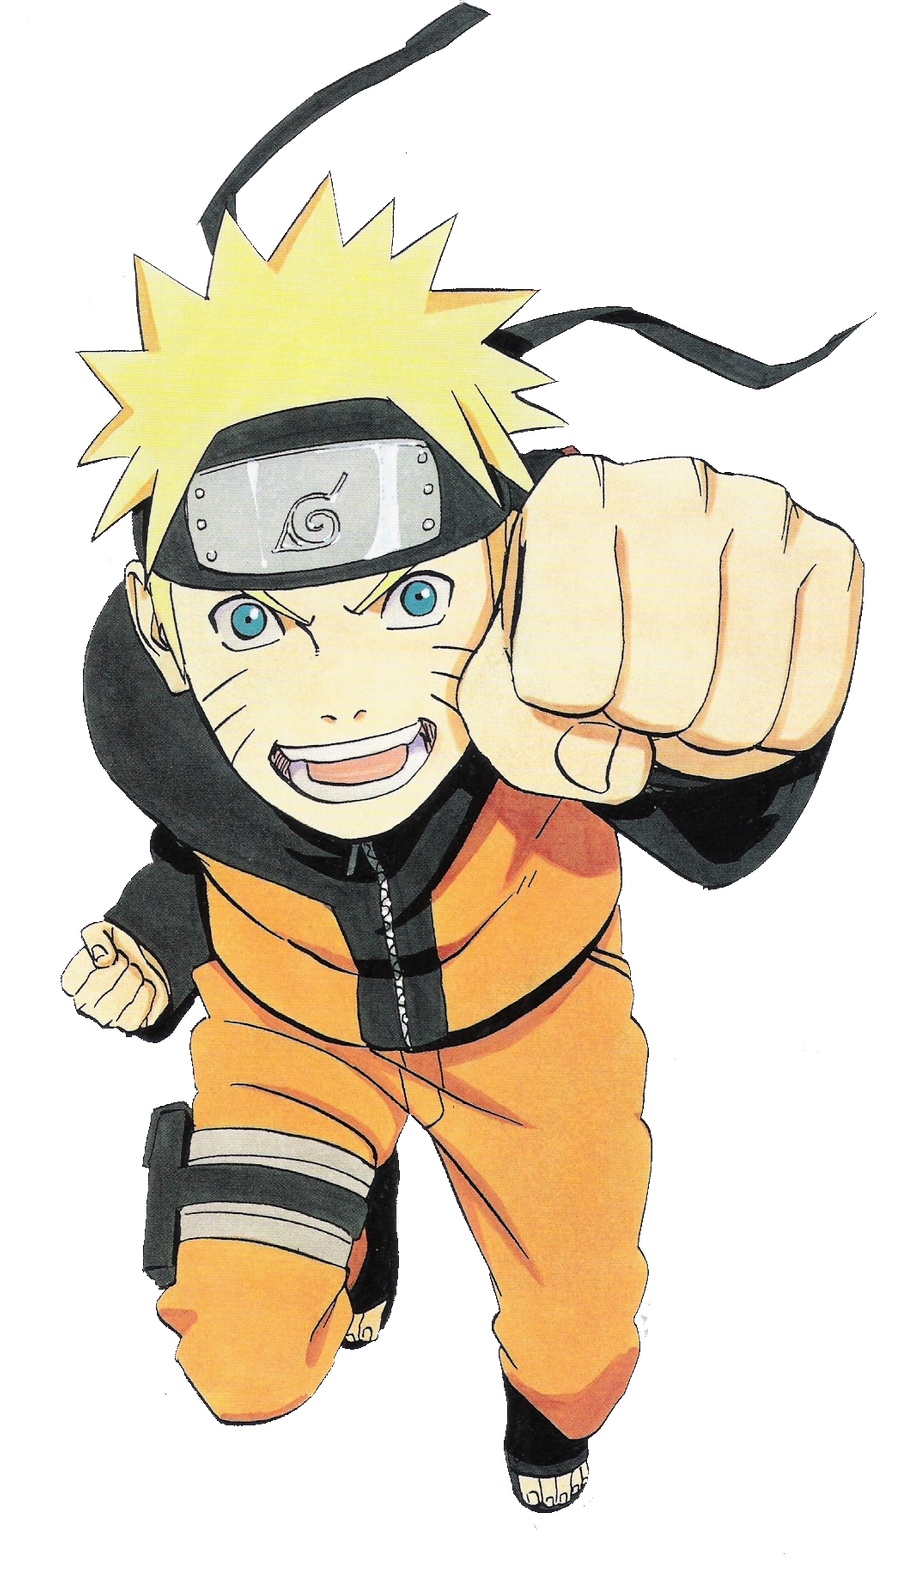 Naruto png images